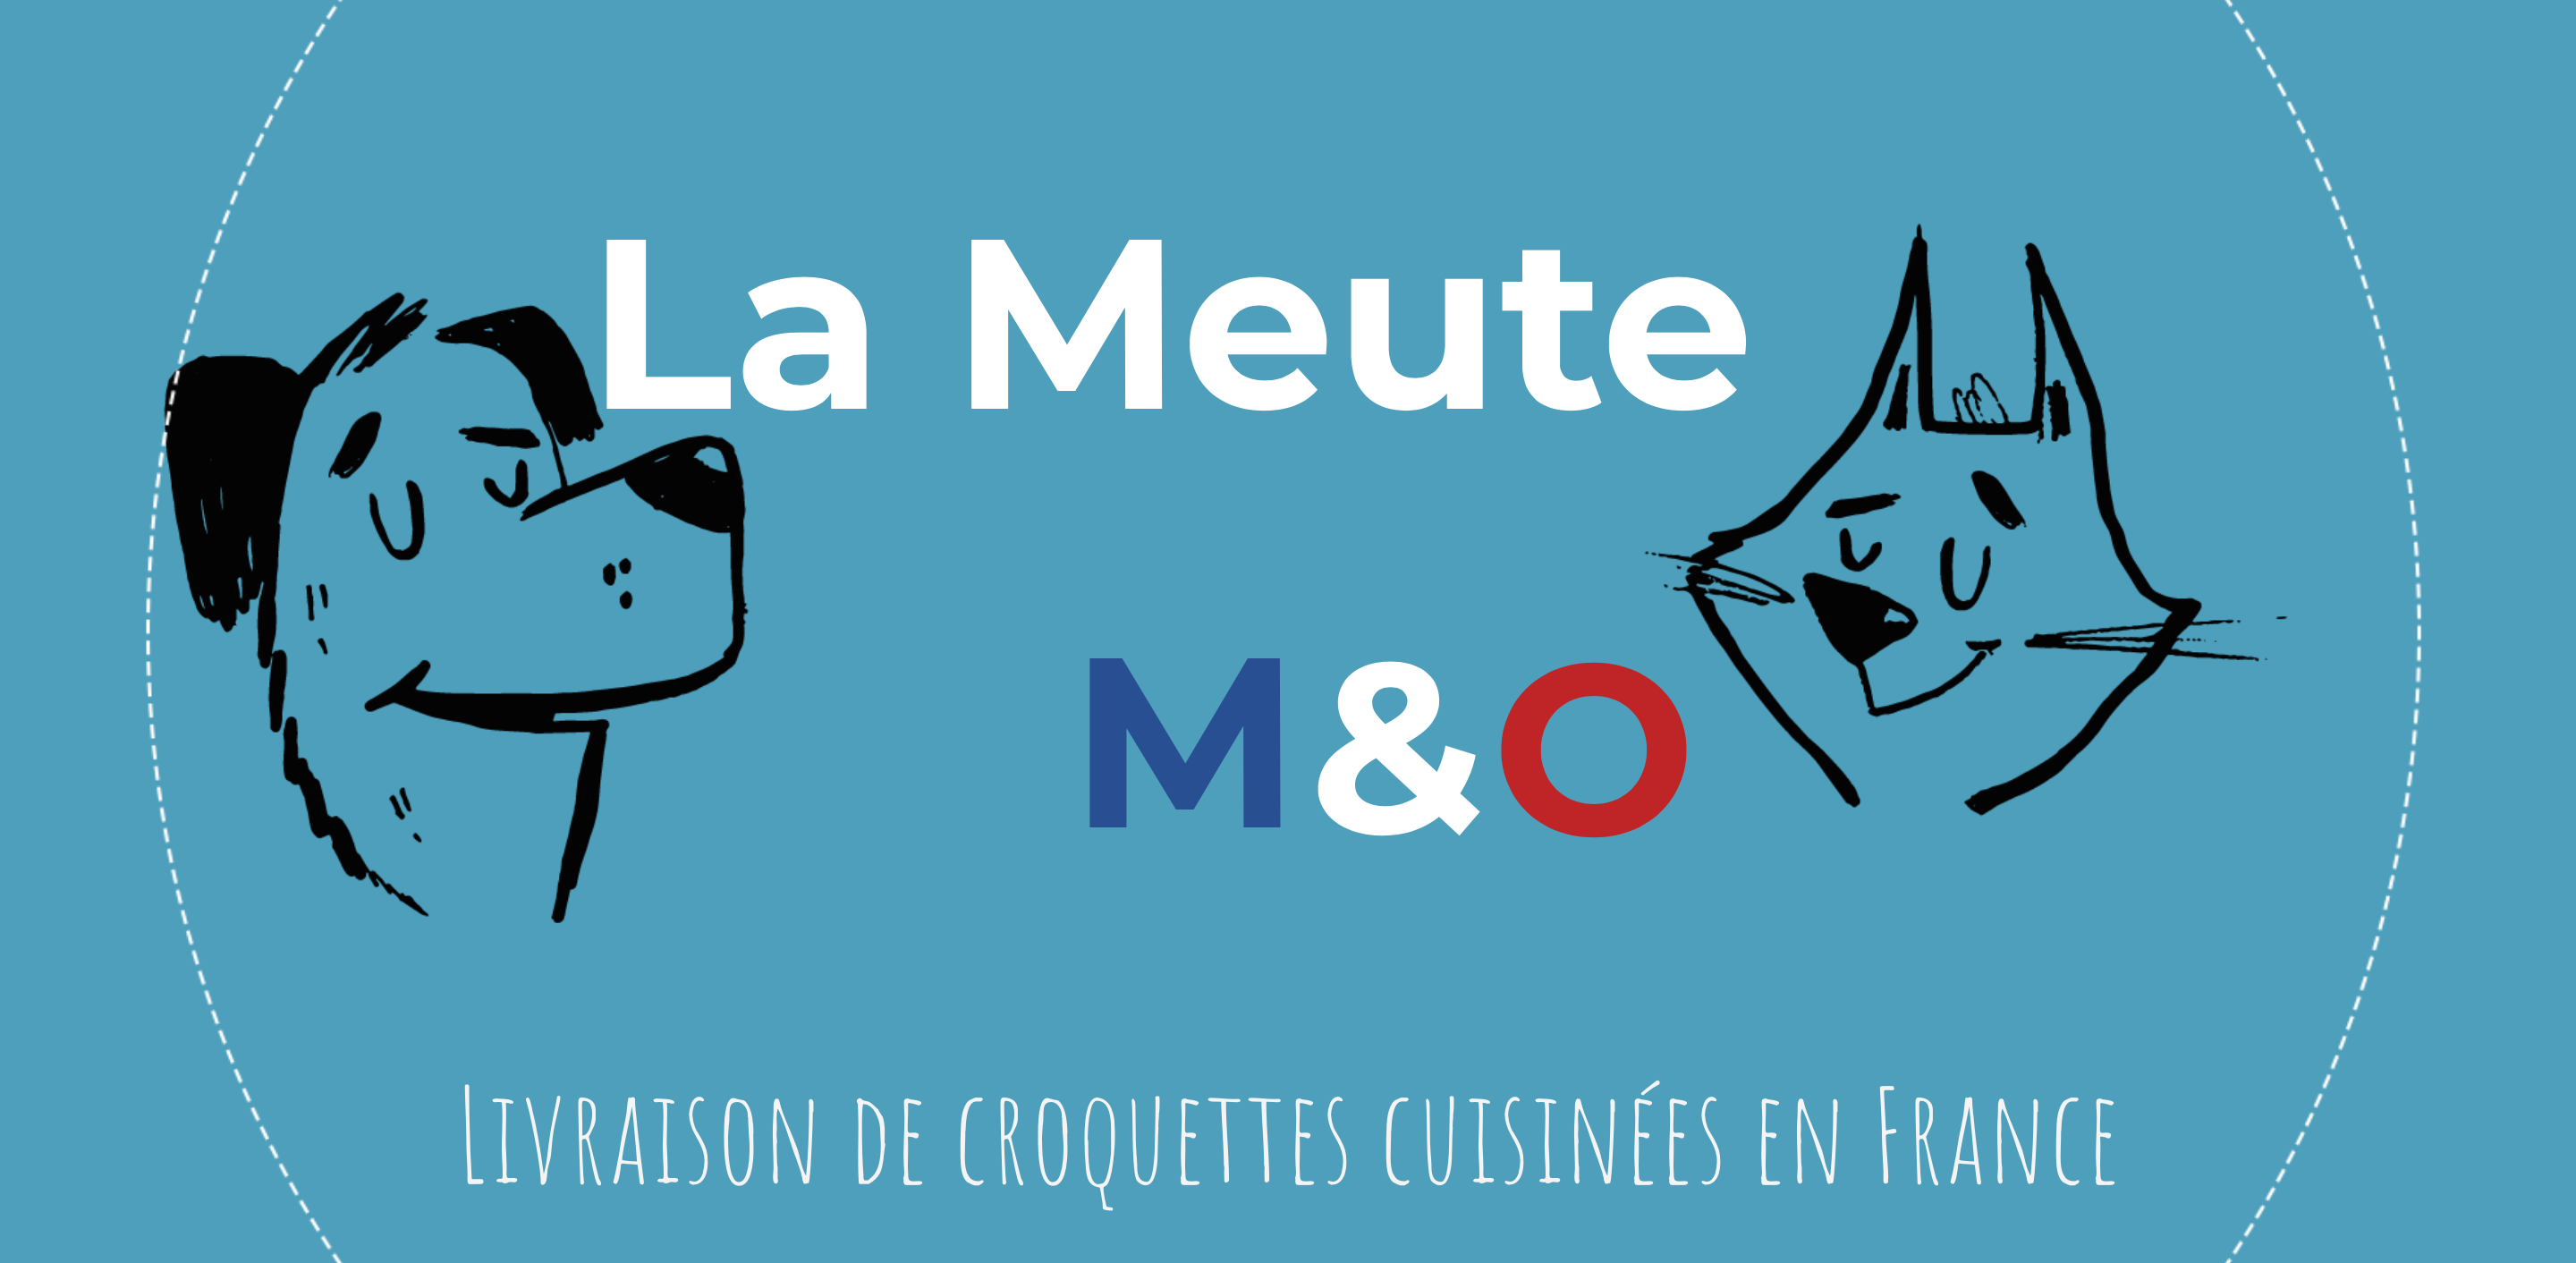 La Meute M&O